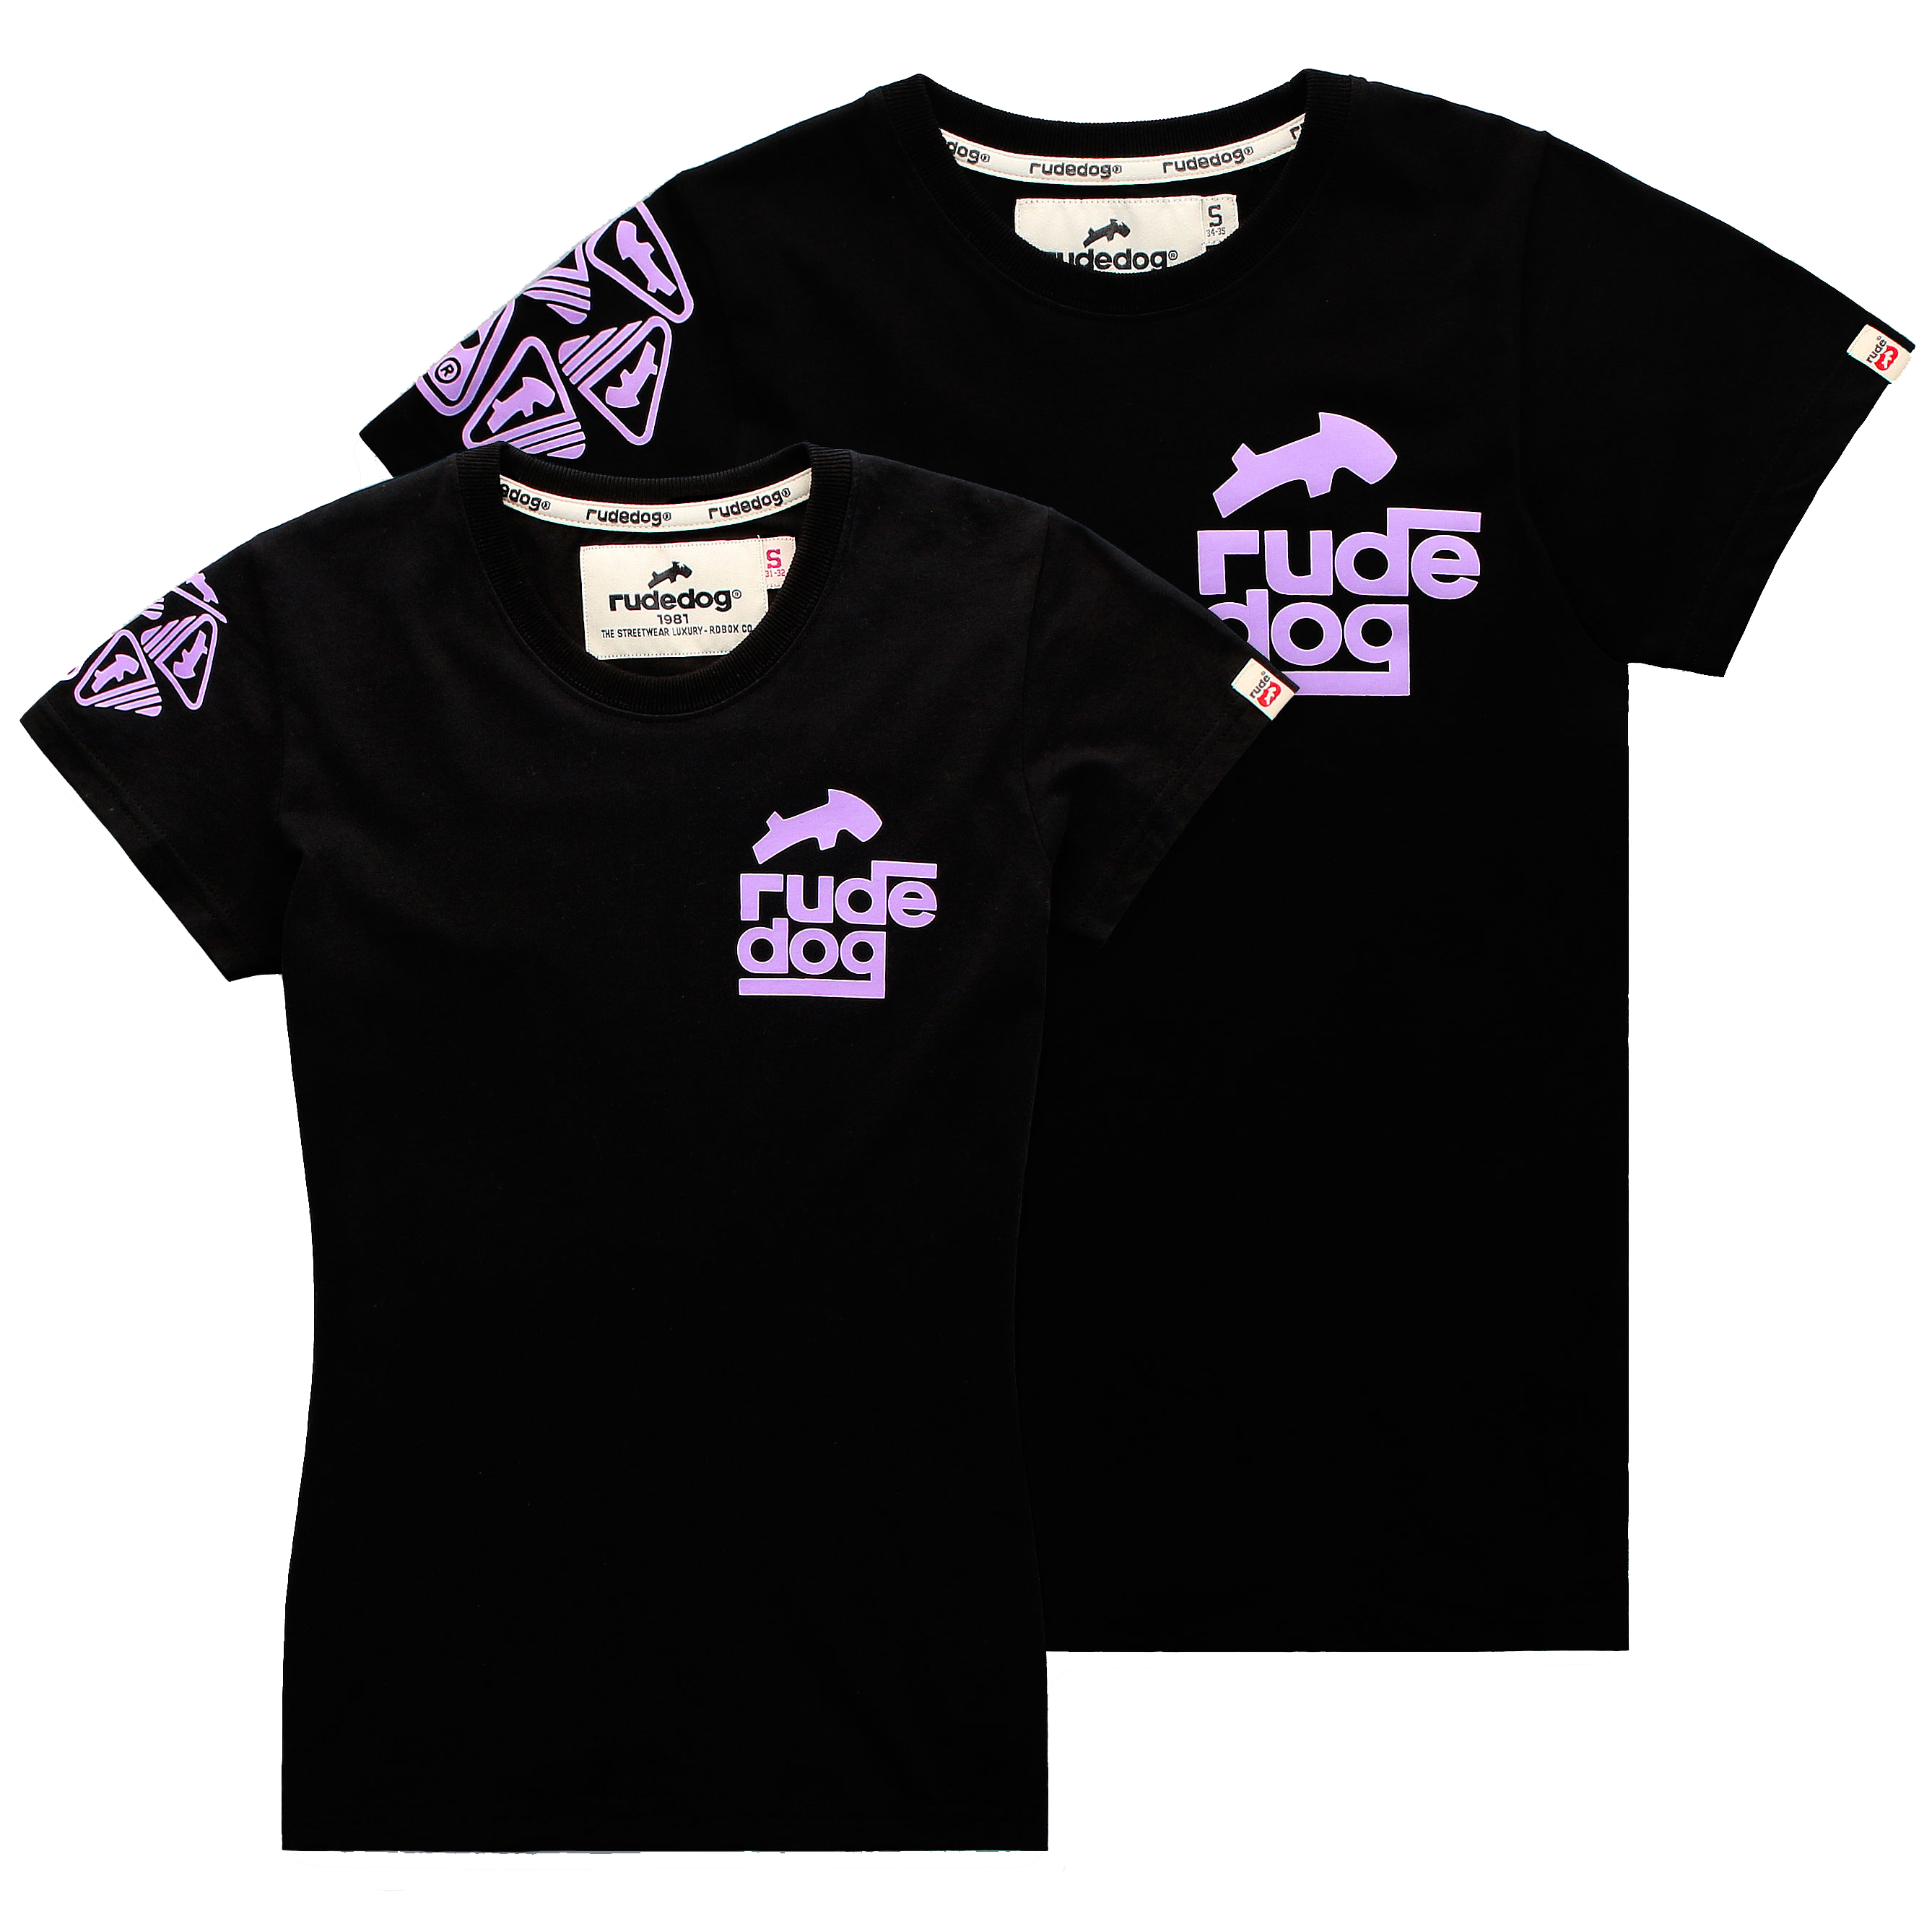 rudedog T-shirt เสื้อยืด รุ่น SquareRude (ผุ้หญิง) แฟชั่น คอกลม ลายสกรีน ผ้าฝ้าย cotton ฟอกนุ่ม ไซส์ S M L XL